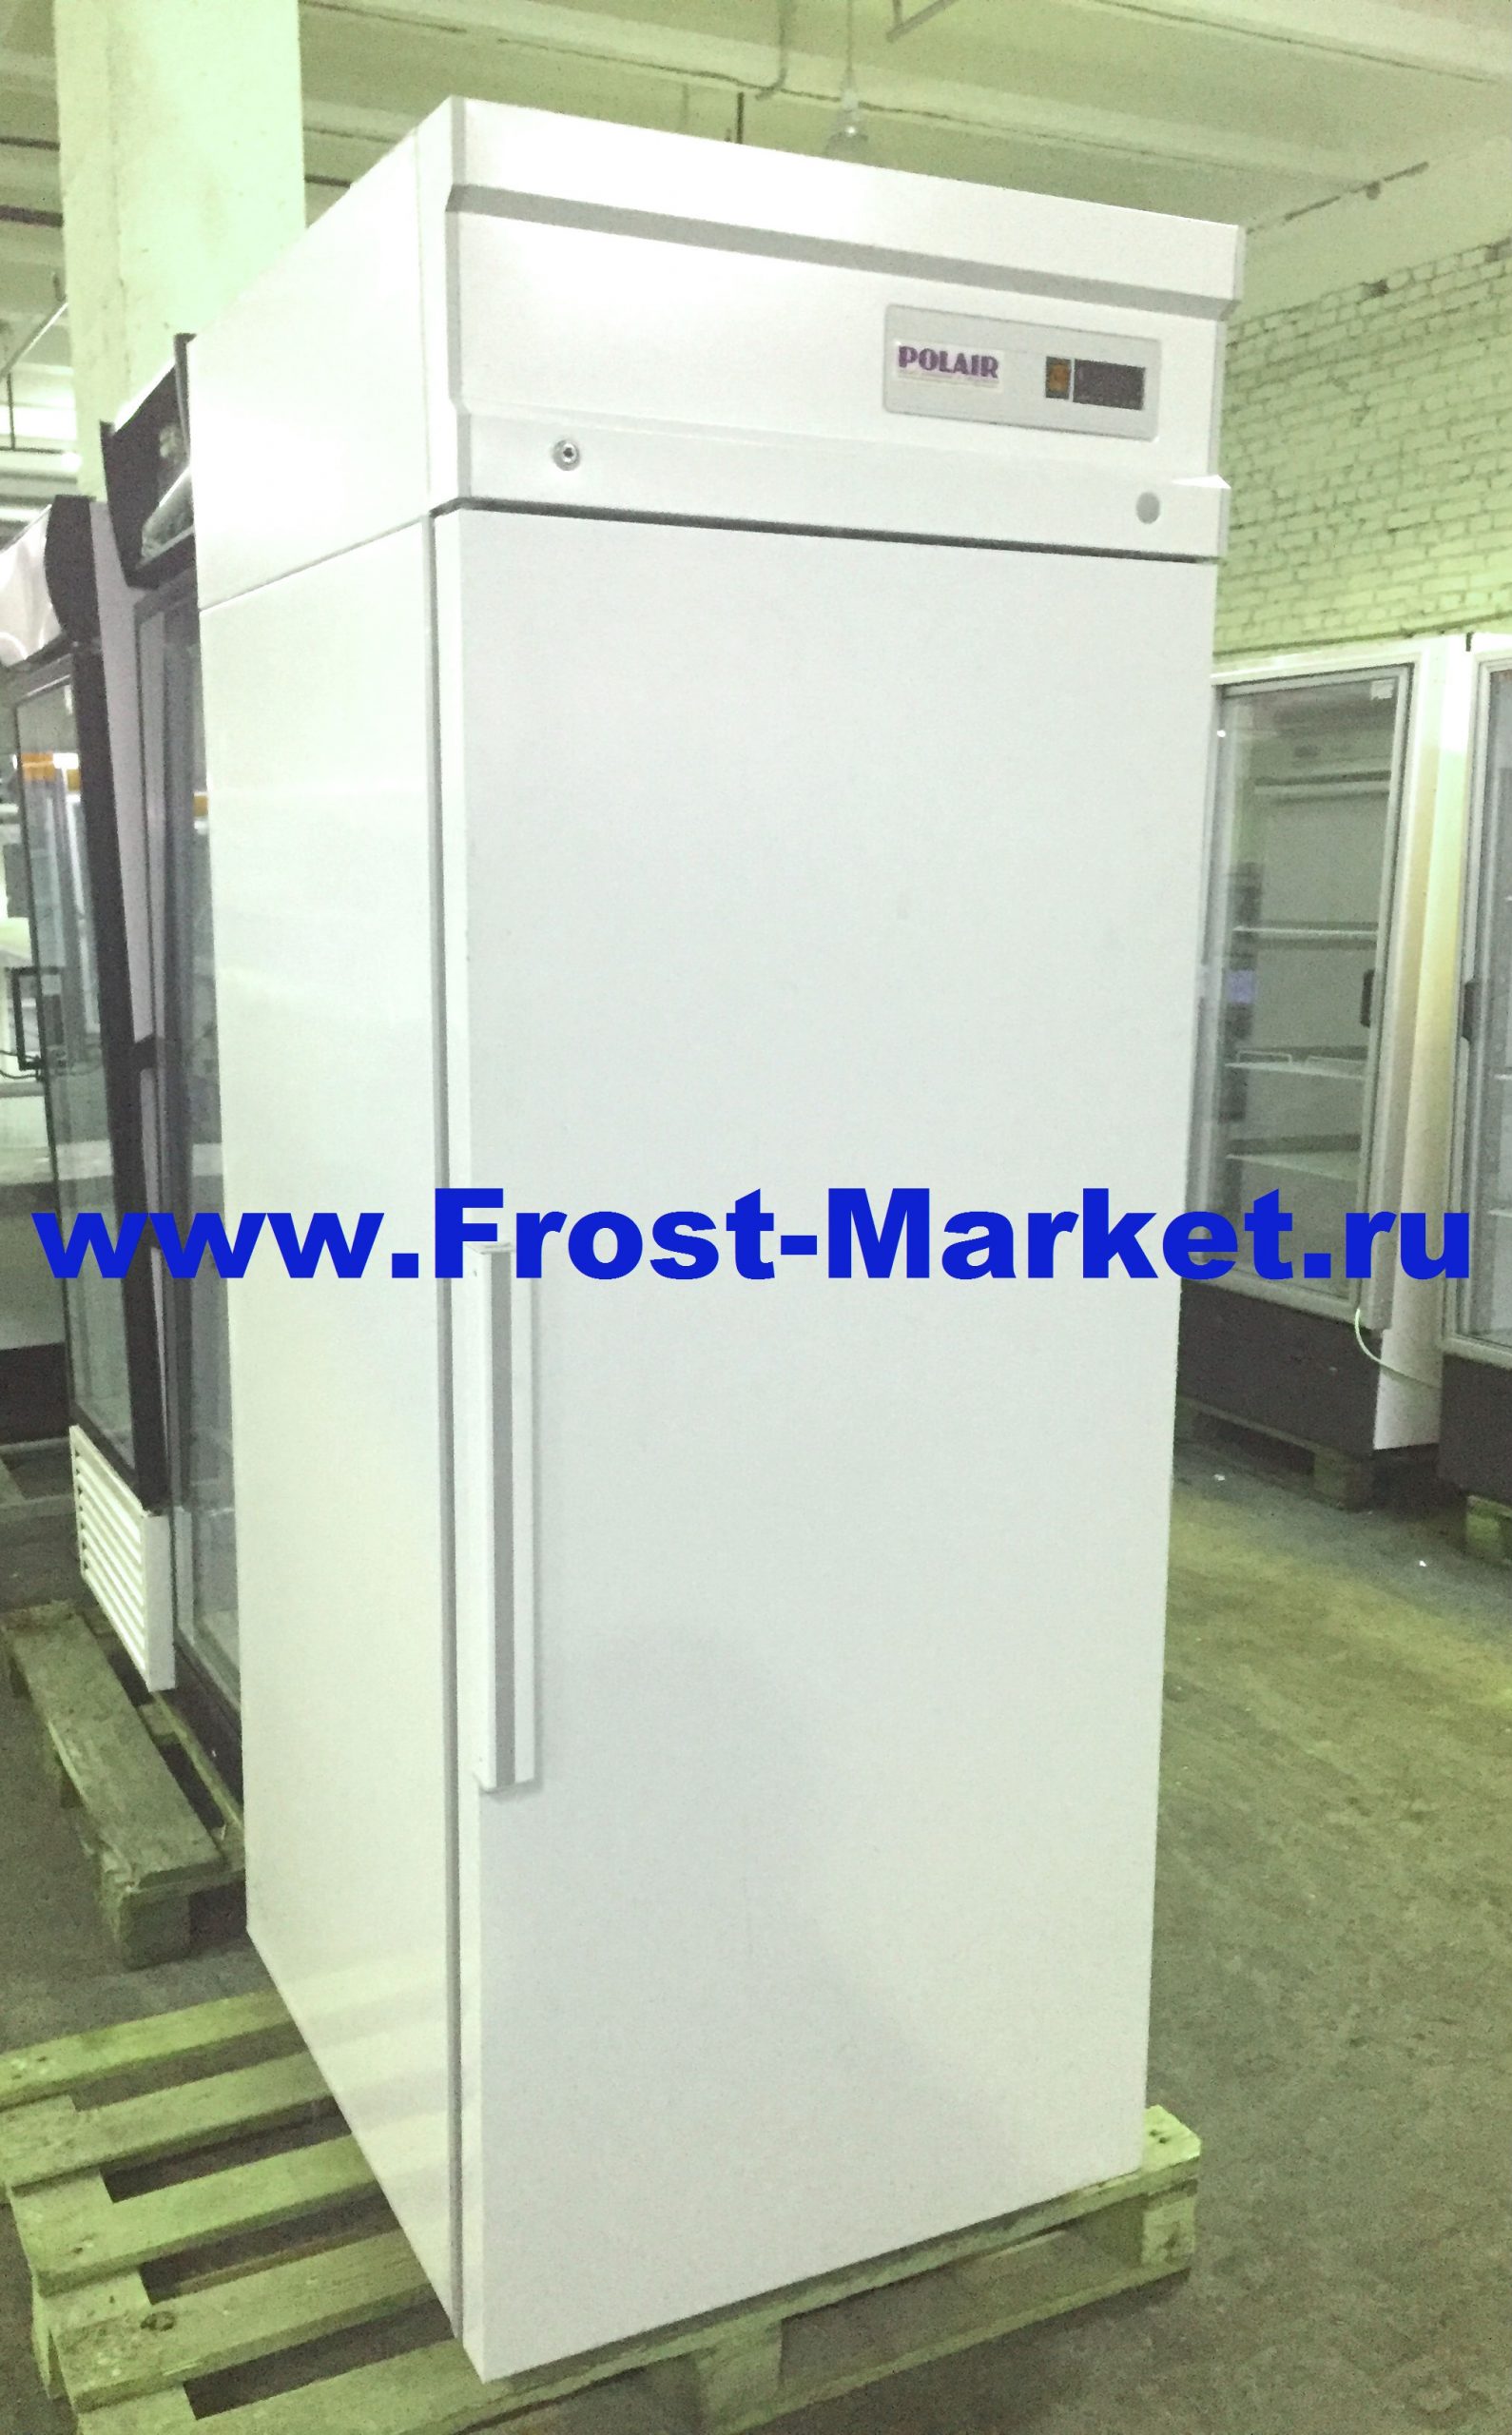 Холодильник Polair cm107-s